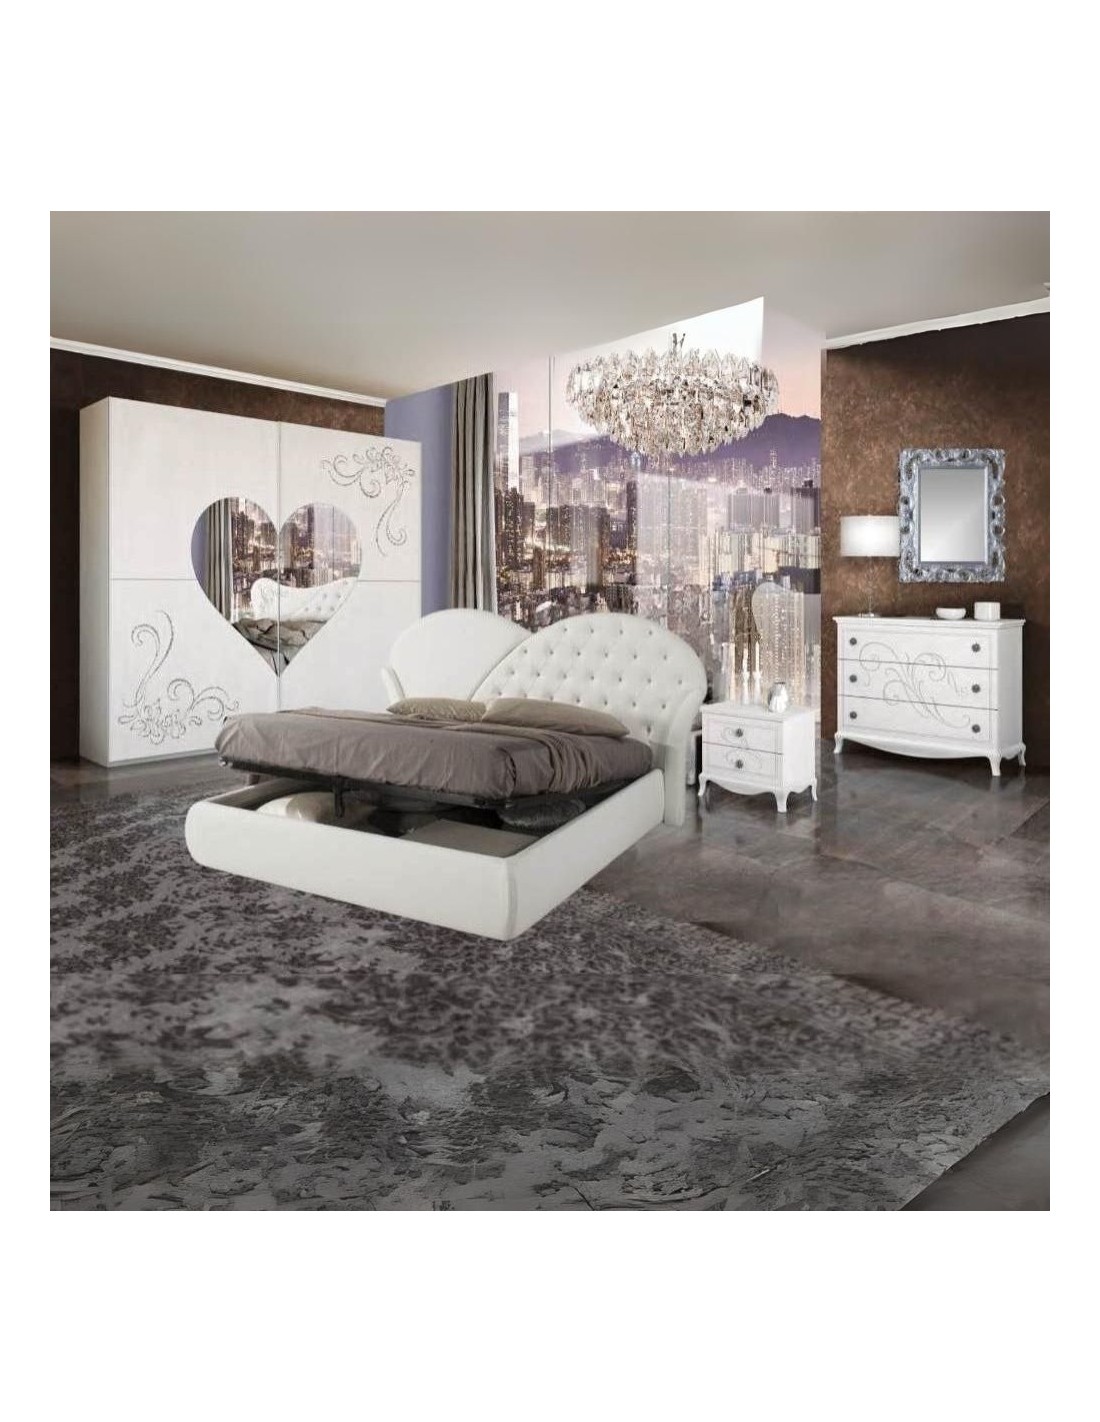 Camera da letto bianco frassino Marina specchio a cuore e serigrafie glitter argento